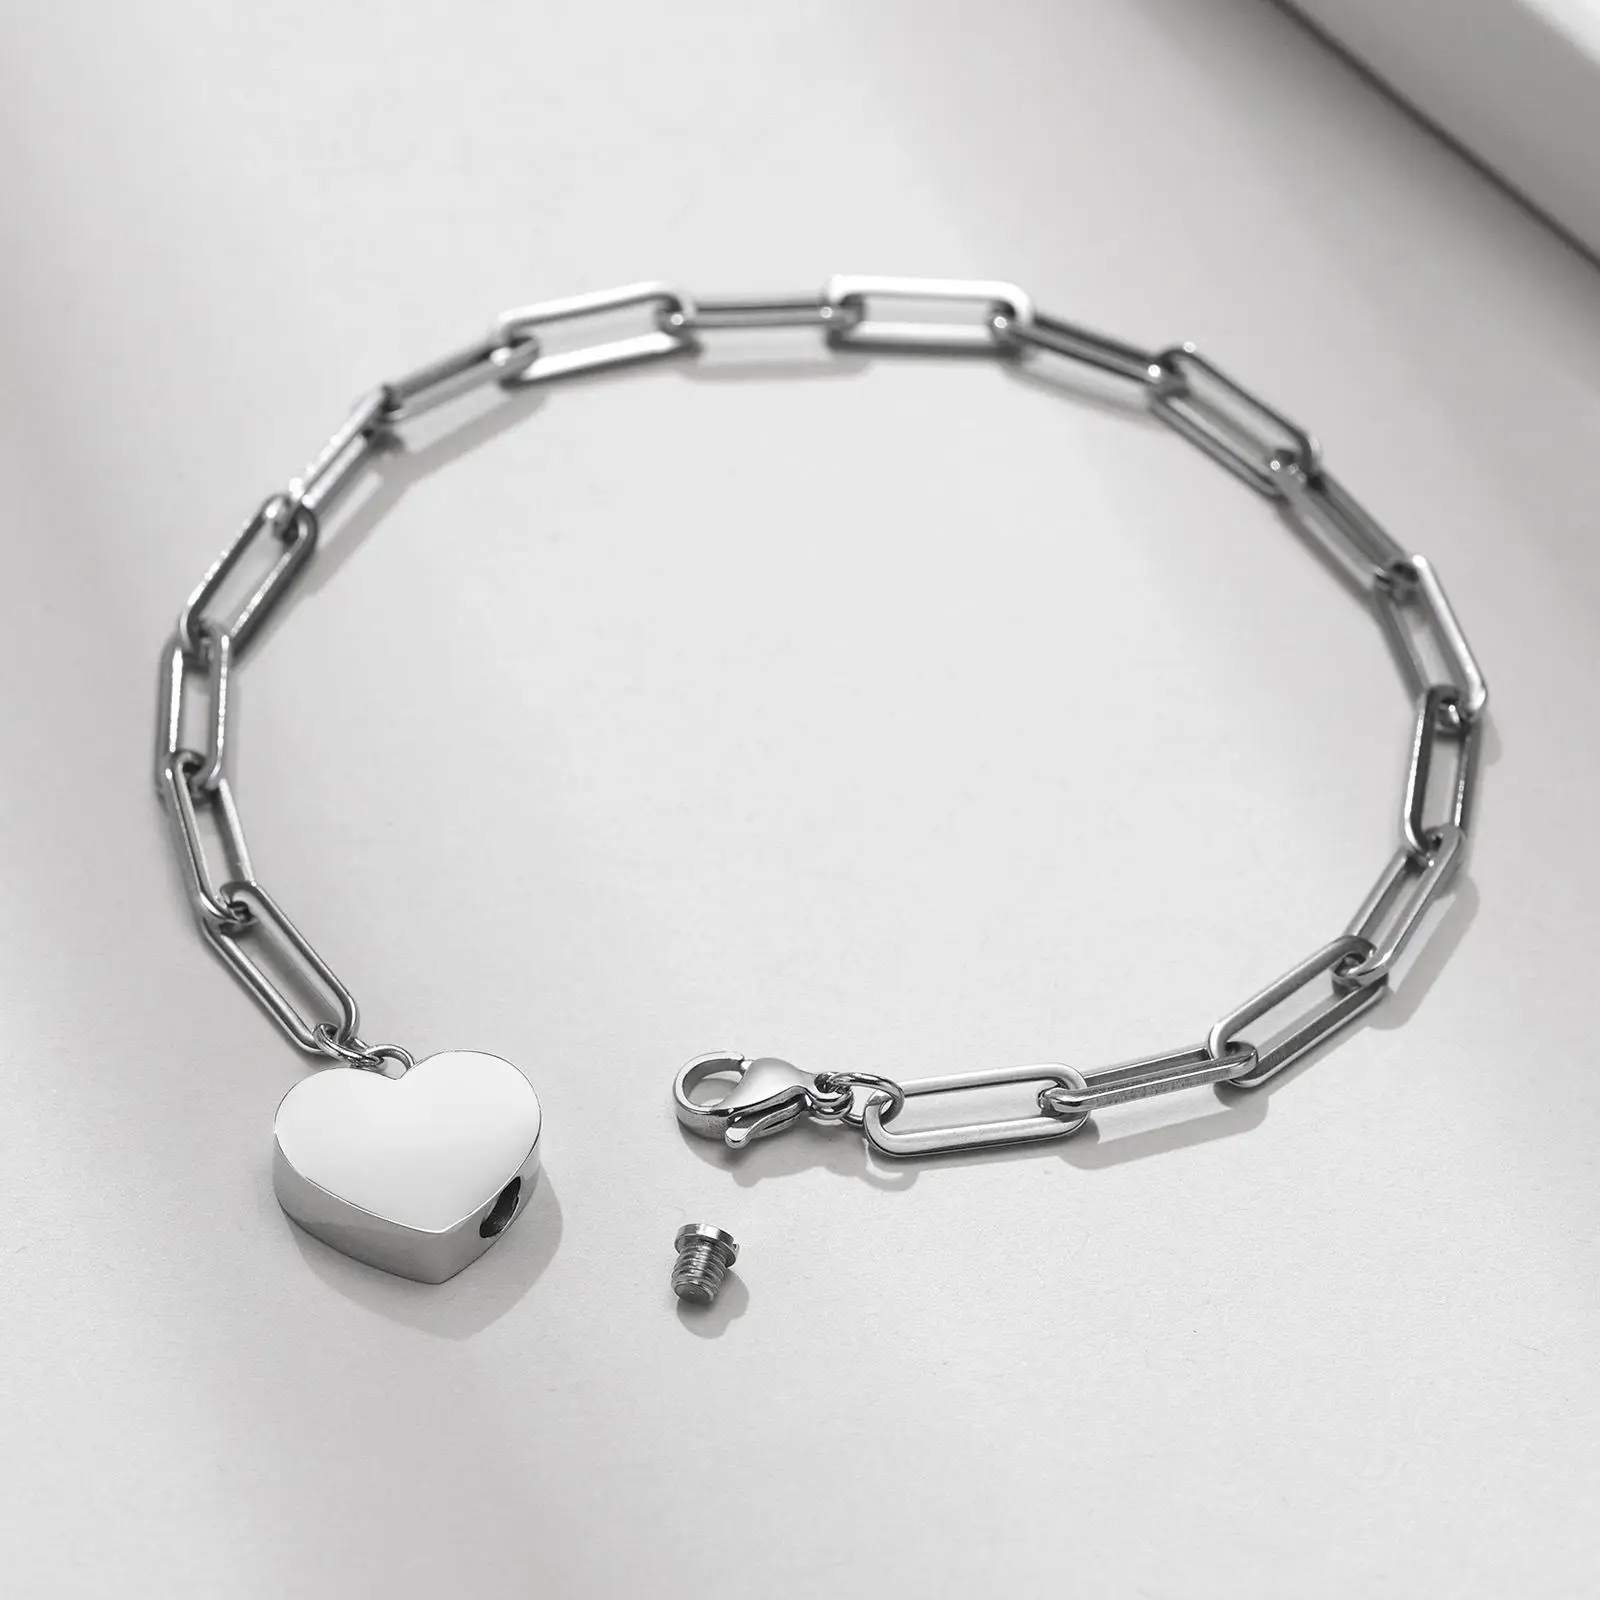 Heart Cremation Bracelet Memorial Gift Adjustable Simple for Husband Friends